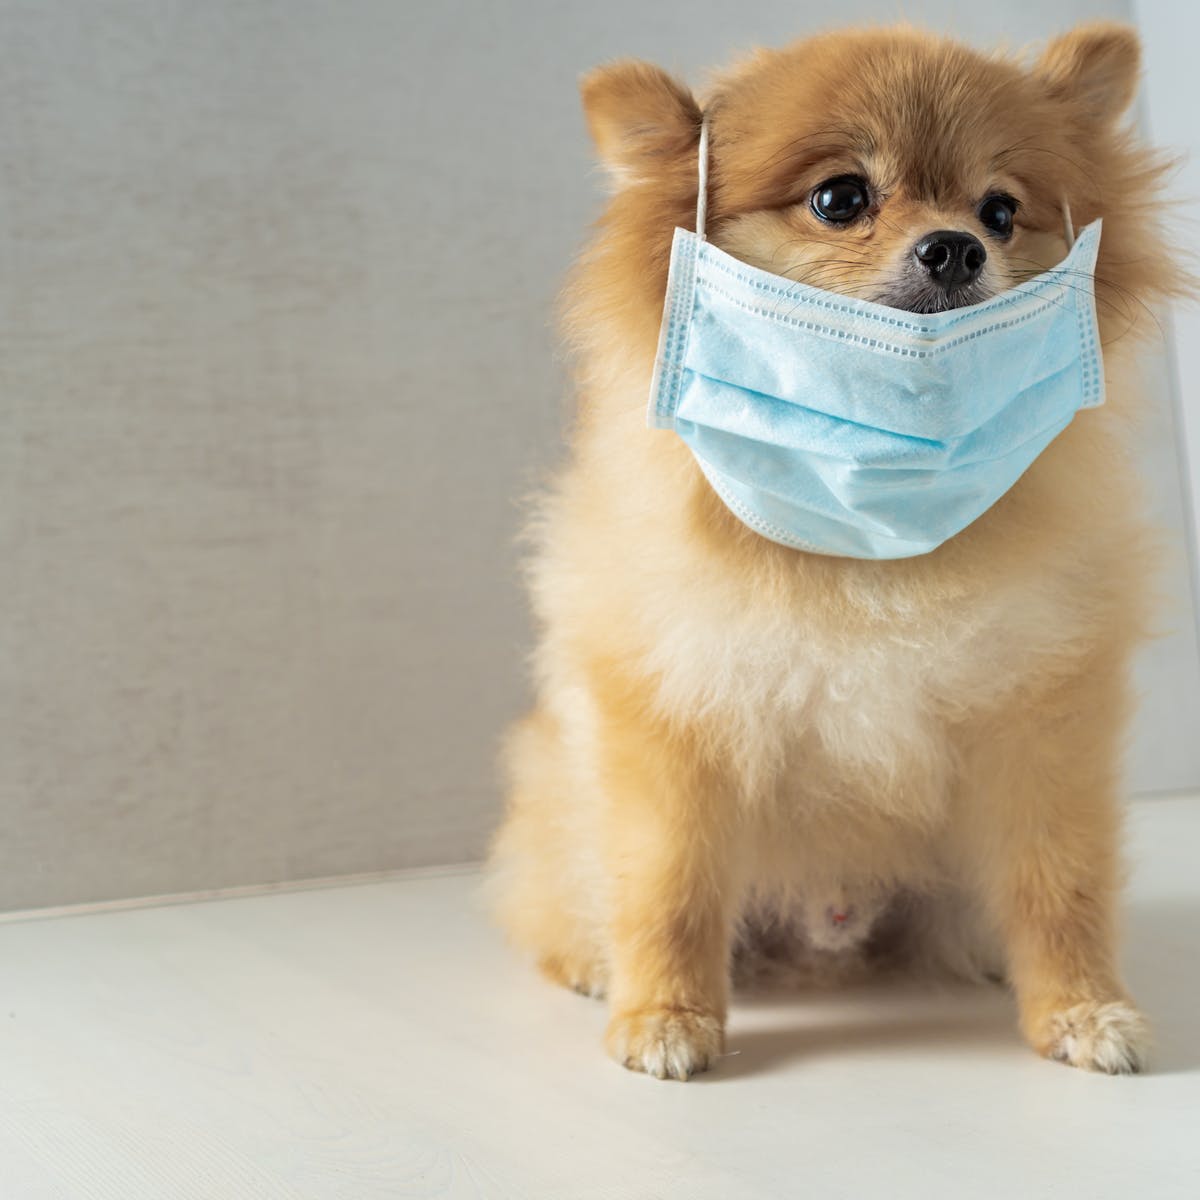 dog 1 लोगों में कोरोना के संक्रमण का पता लगाएंगे कुत्ते, जानिए कैसे करेंगे काम?